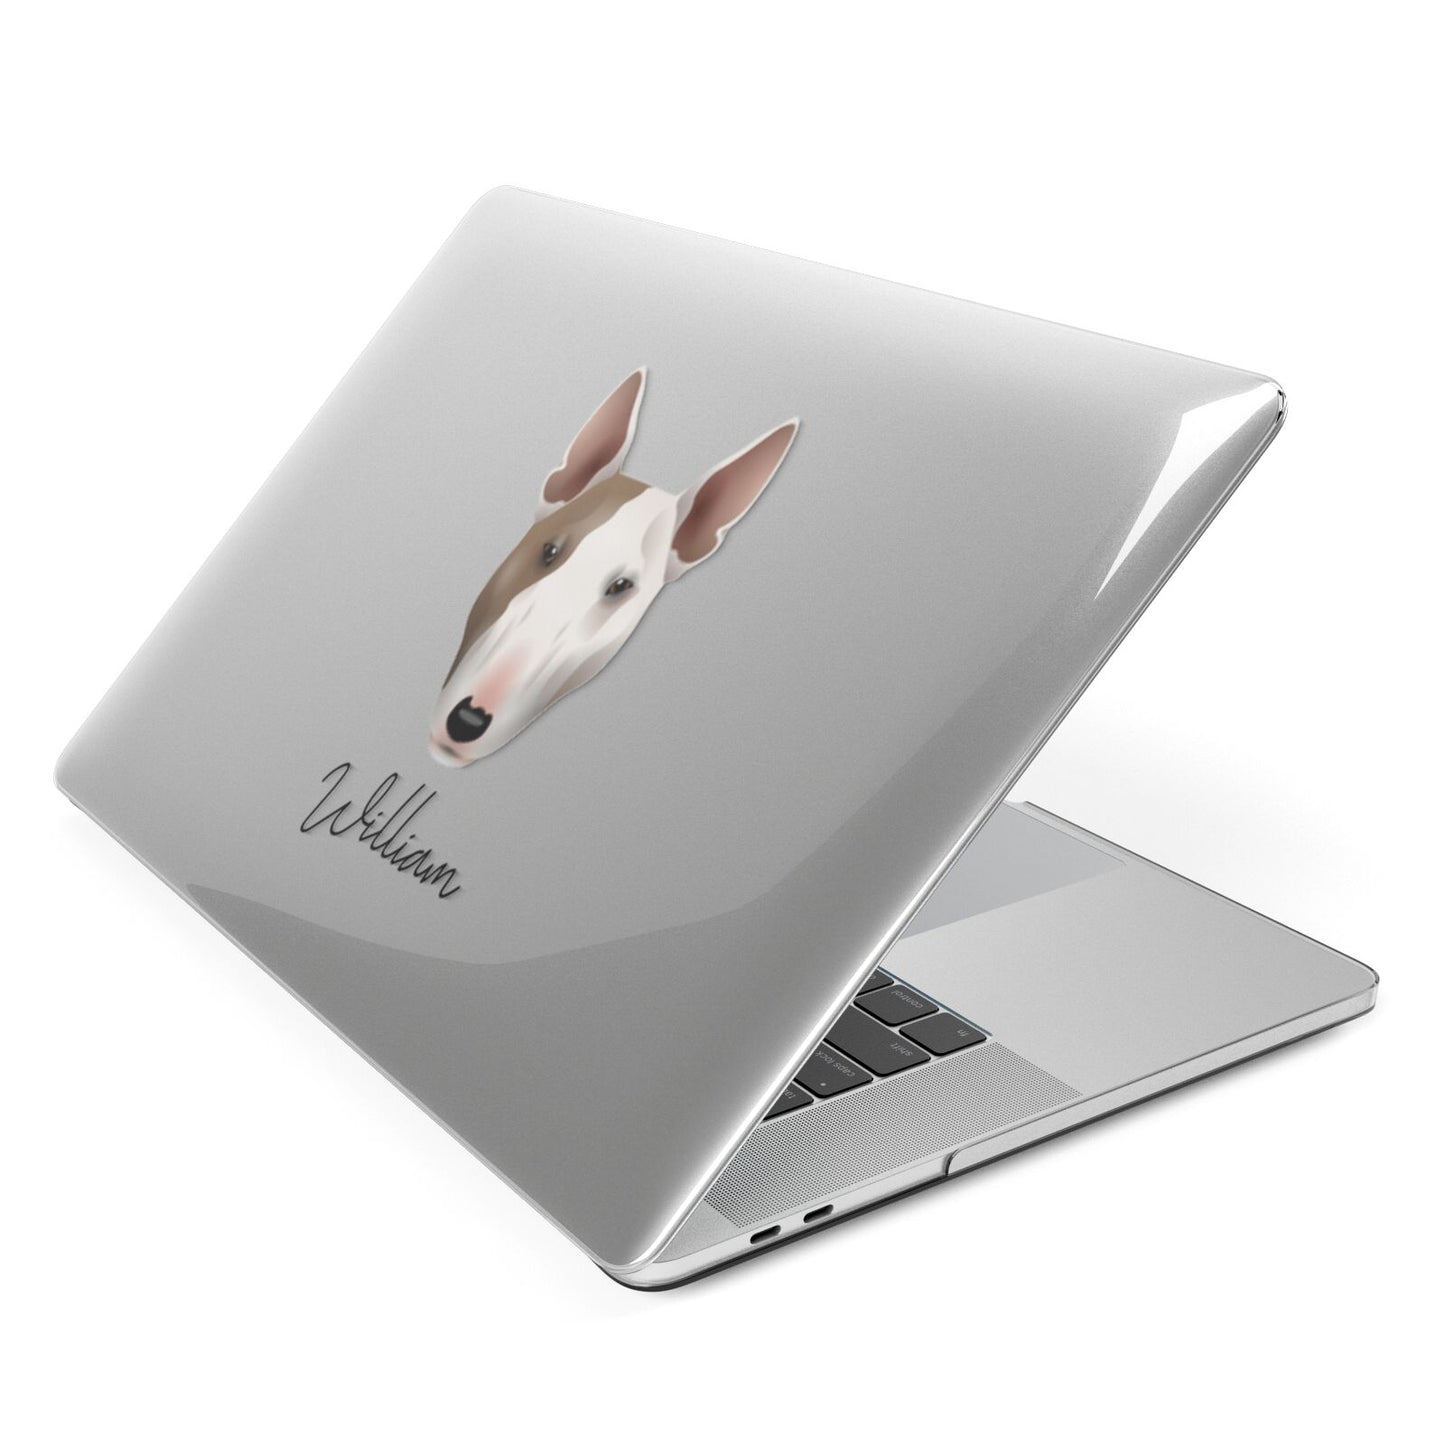 Bull Terrier Personalised Apple MacBook Case Side View